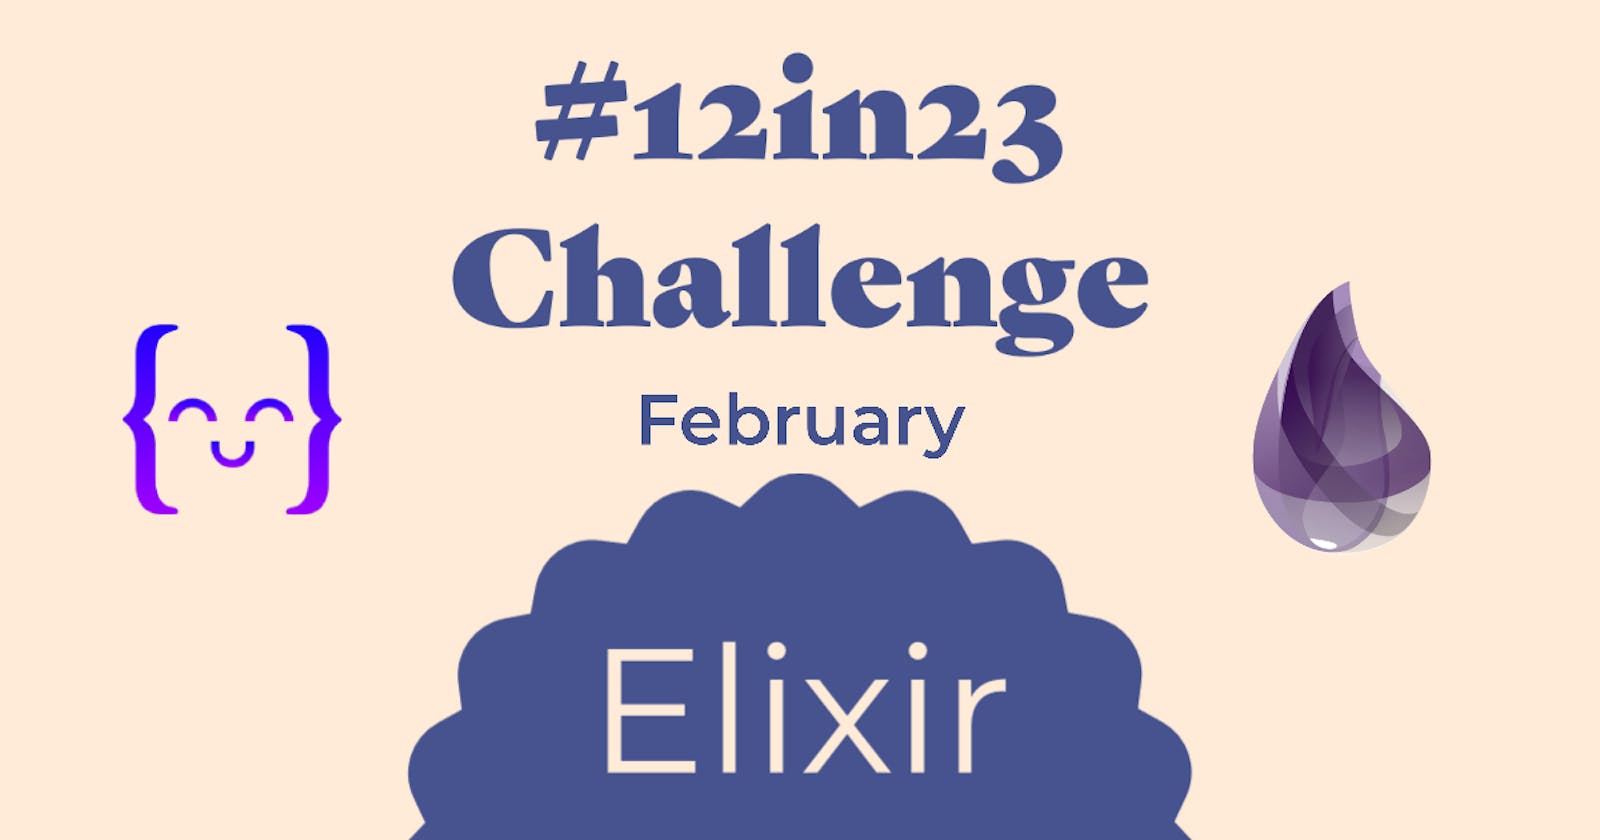 #12in23 Challenge - February - Elixir